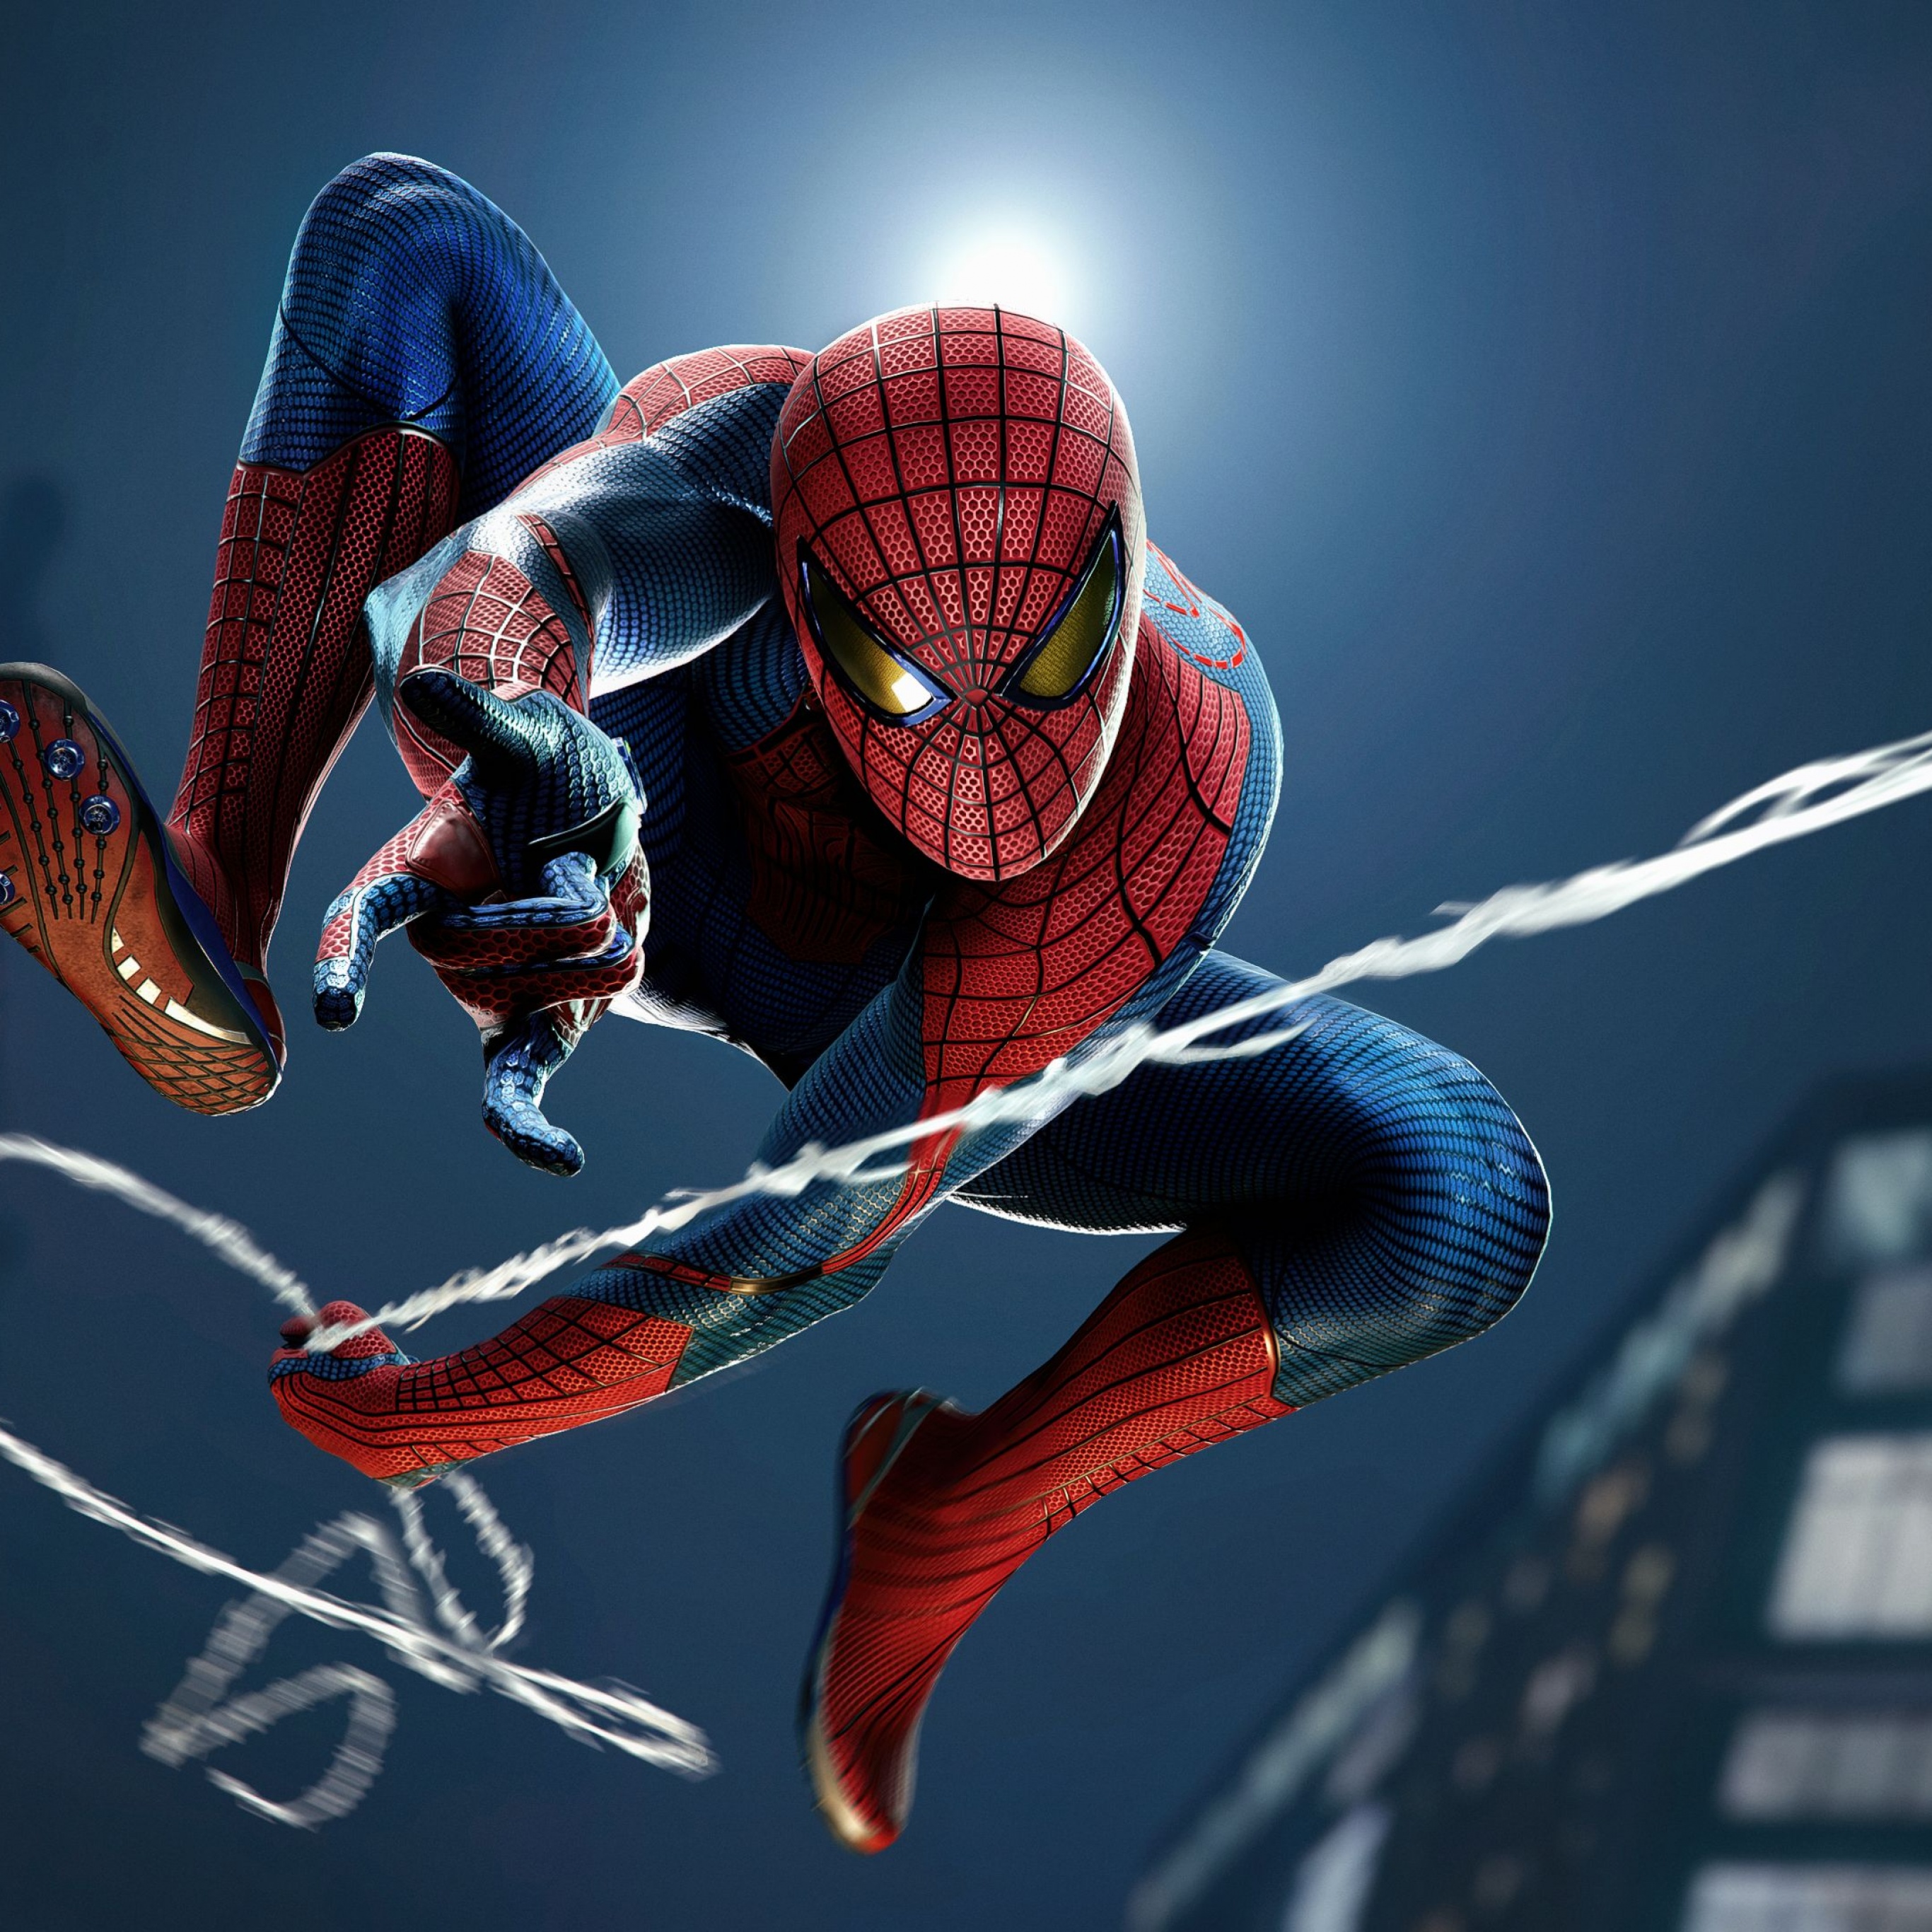 Siêu anh hùng Spider Man 2099 lại được khai sinh trong bộ sưu tập Artwork HD Wallpaper. Hãy cùng thưởng thức những hình nền hoàn hảo về nhân vật Spider-Man 2099 với độ phân giải cực cao và màu sắc sống động.